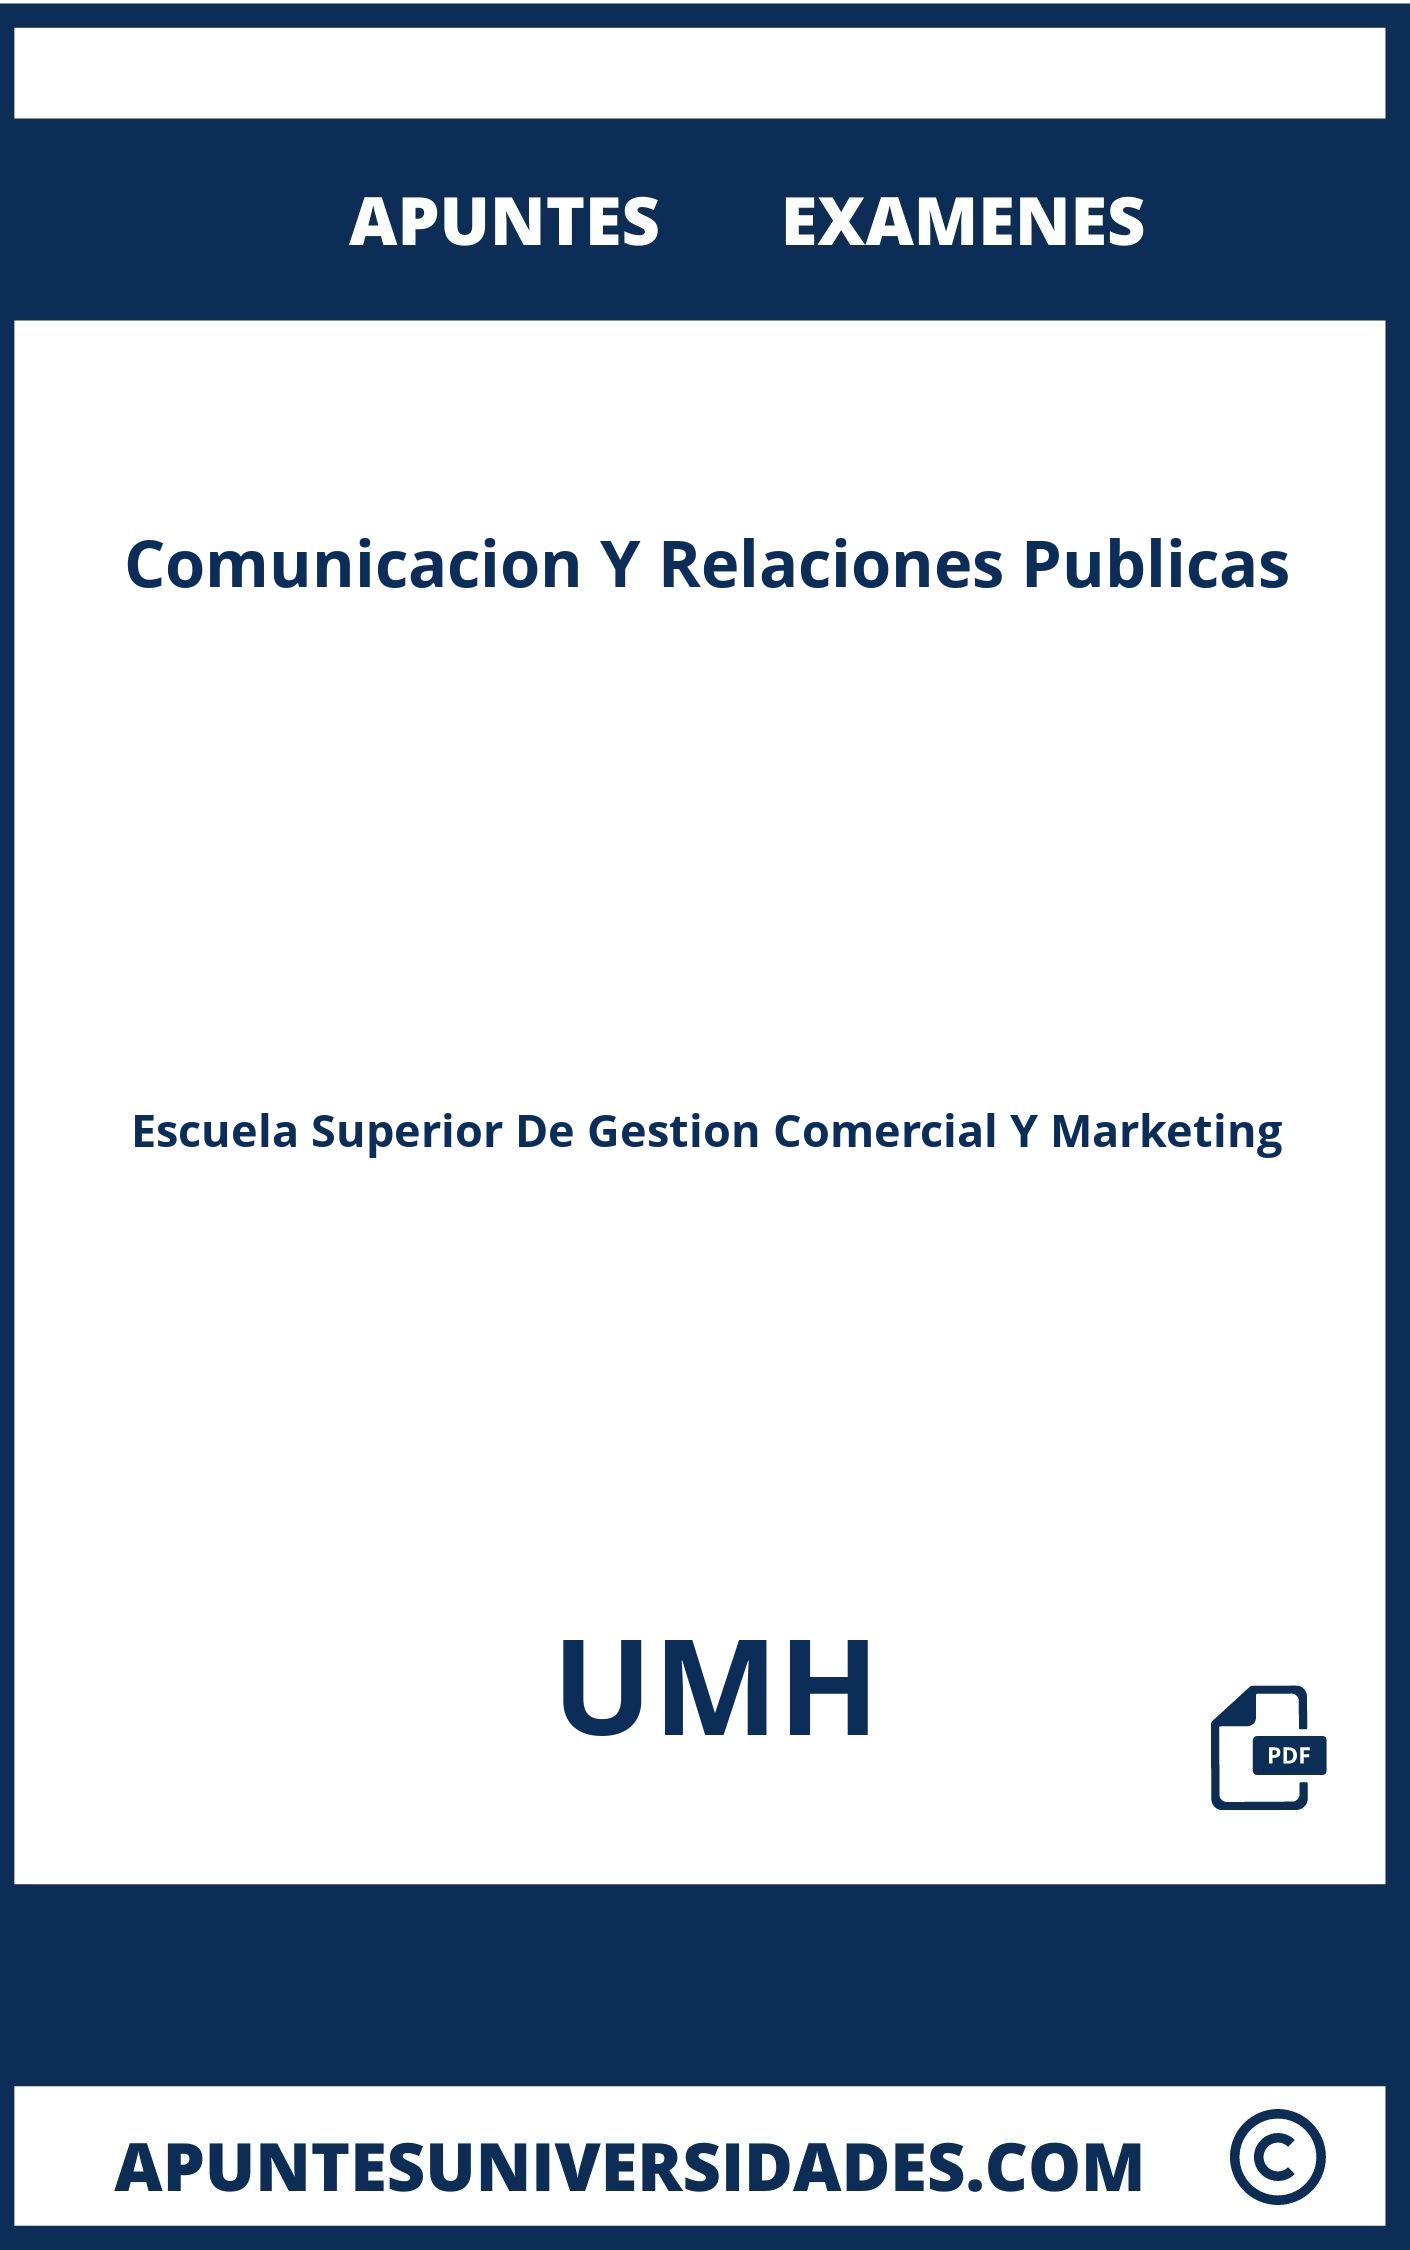 Apuntes y Examenes de Comunicacion Y Relaciones Publicas UMH